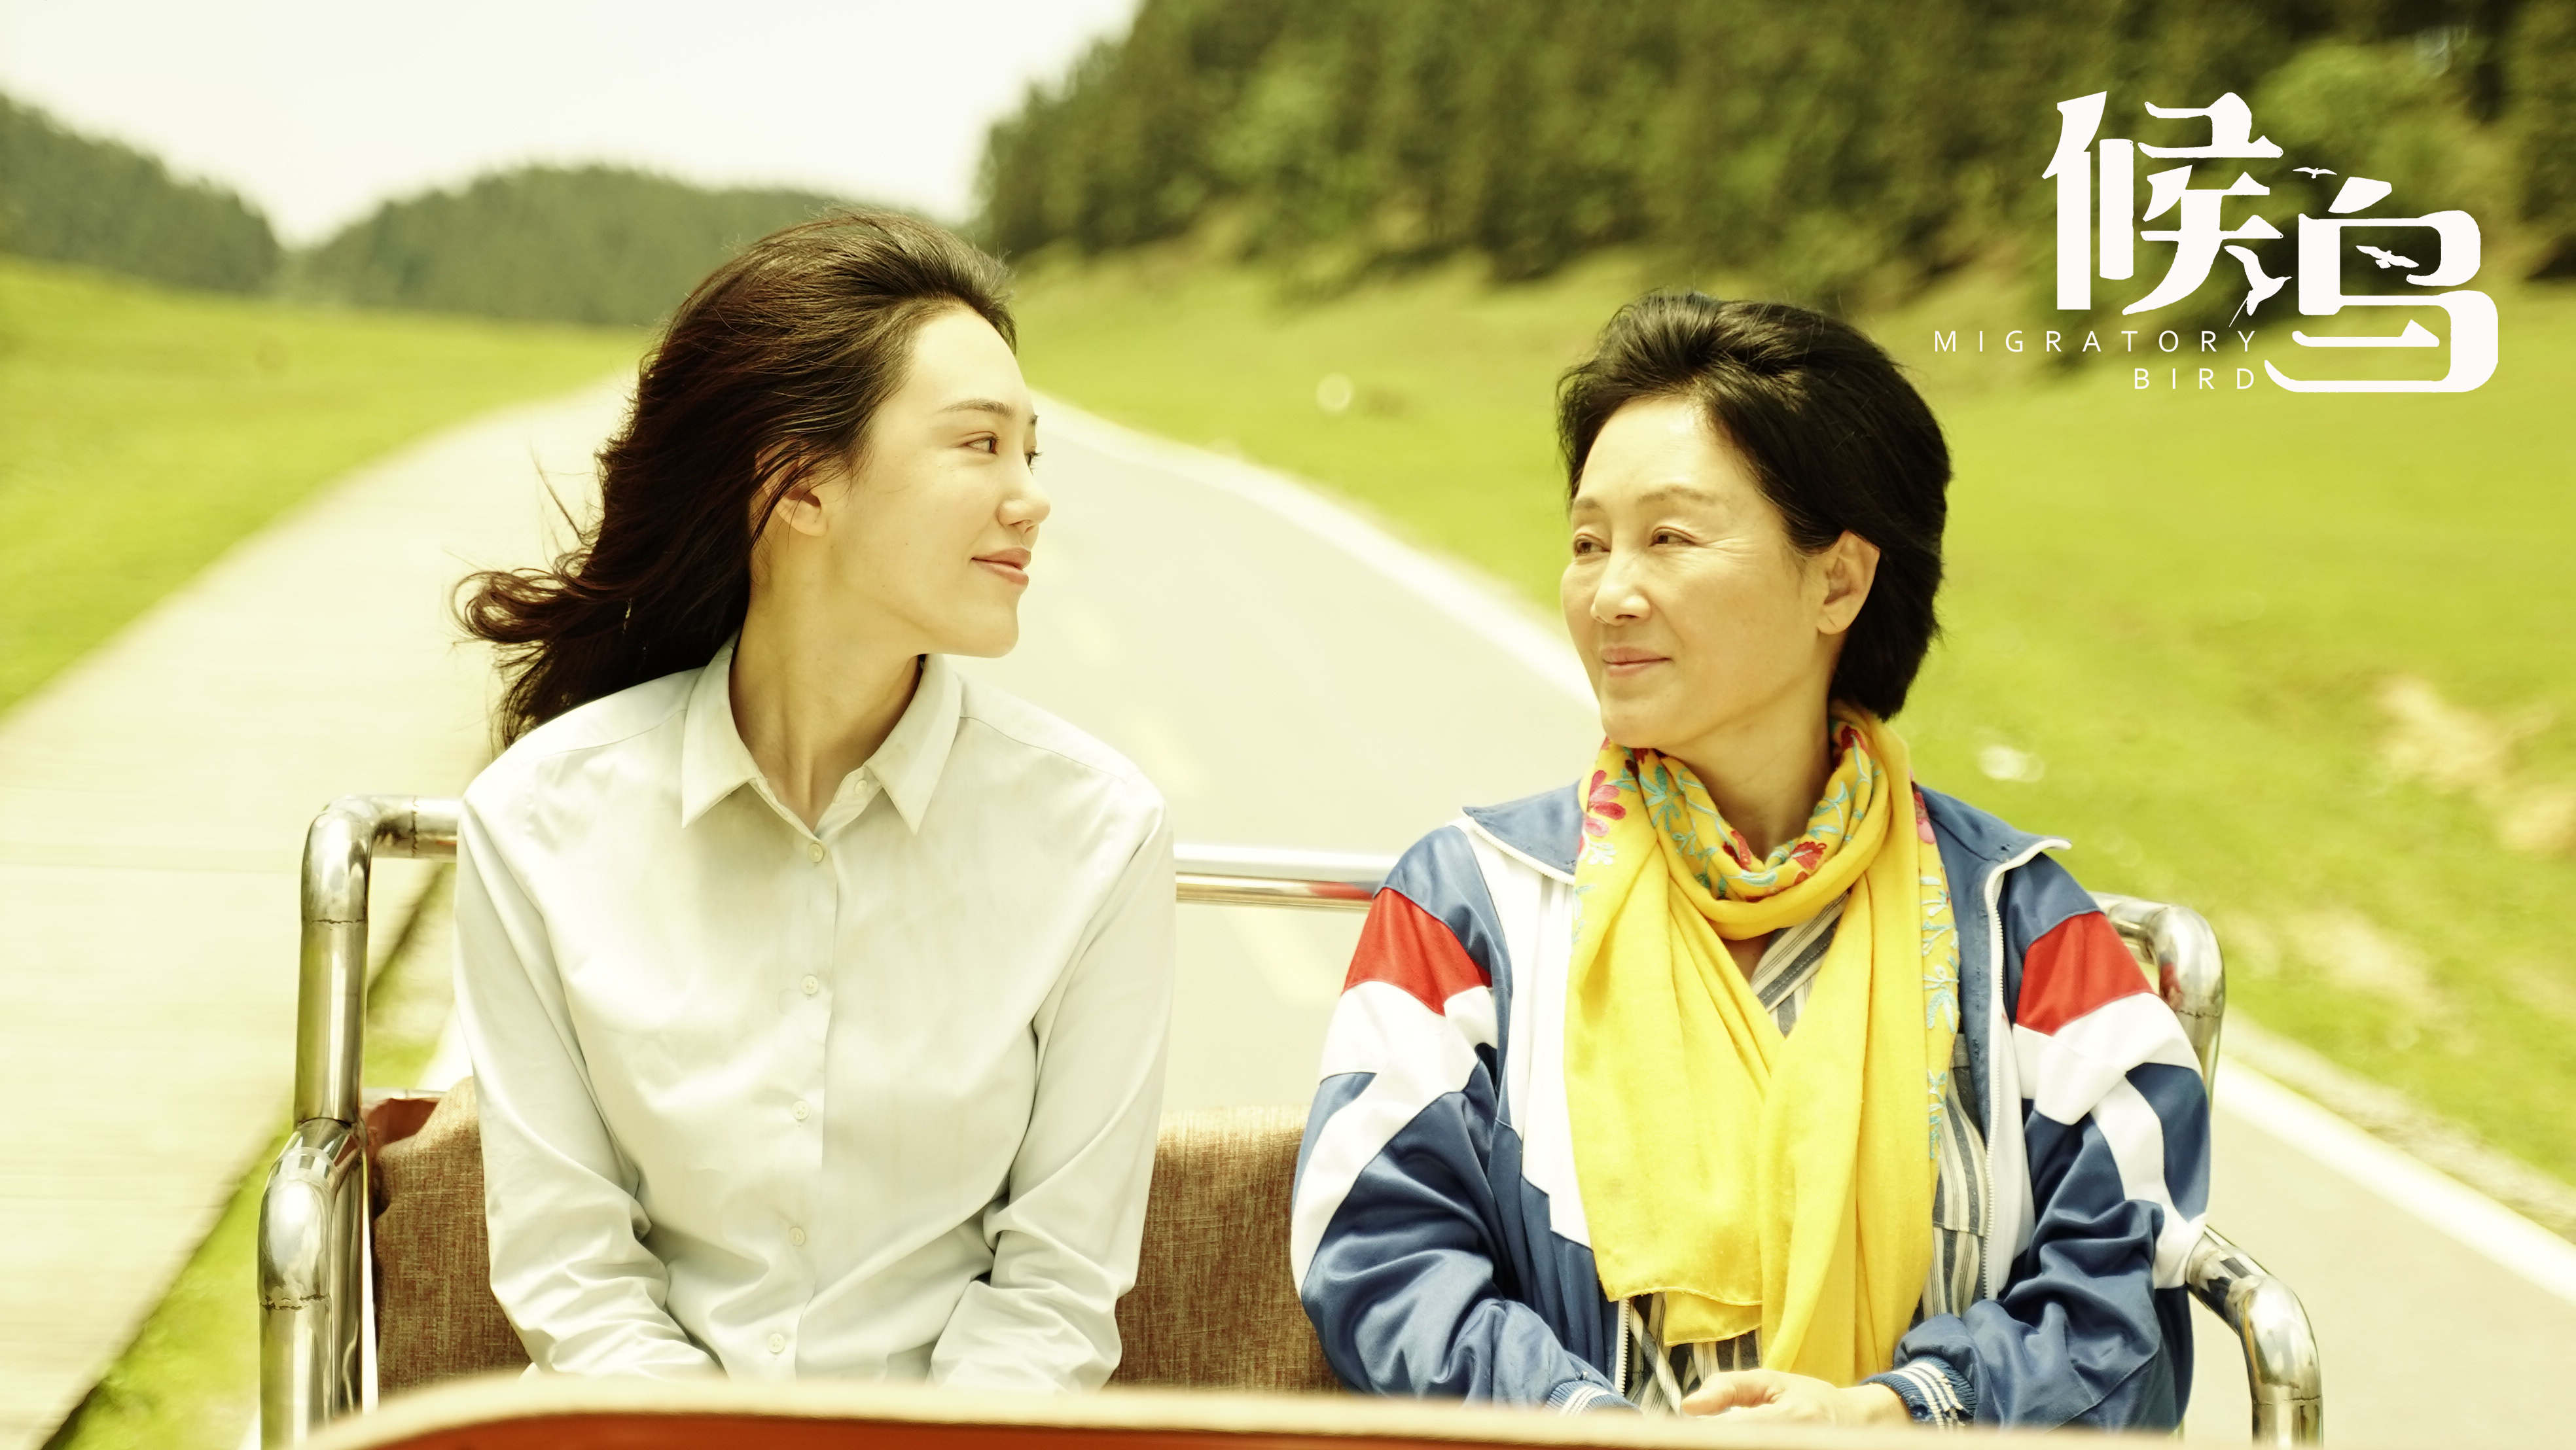 又一“国民妈妈”!王姬主演《候鸟》4月30日上映